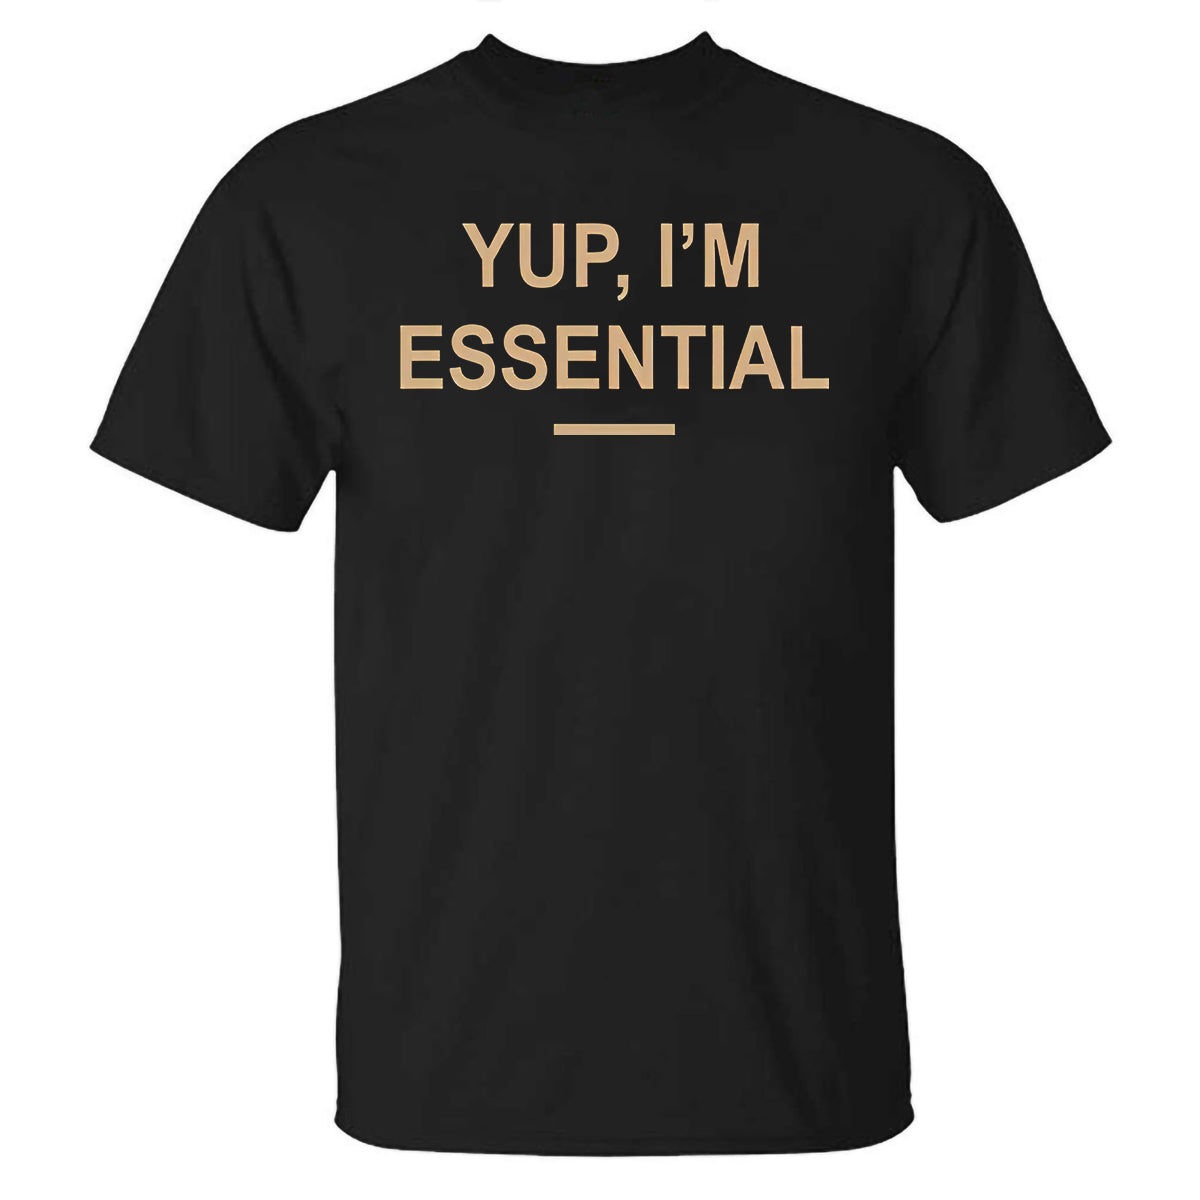 Yup, I'm Essential Printed Casual T-shirt